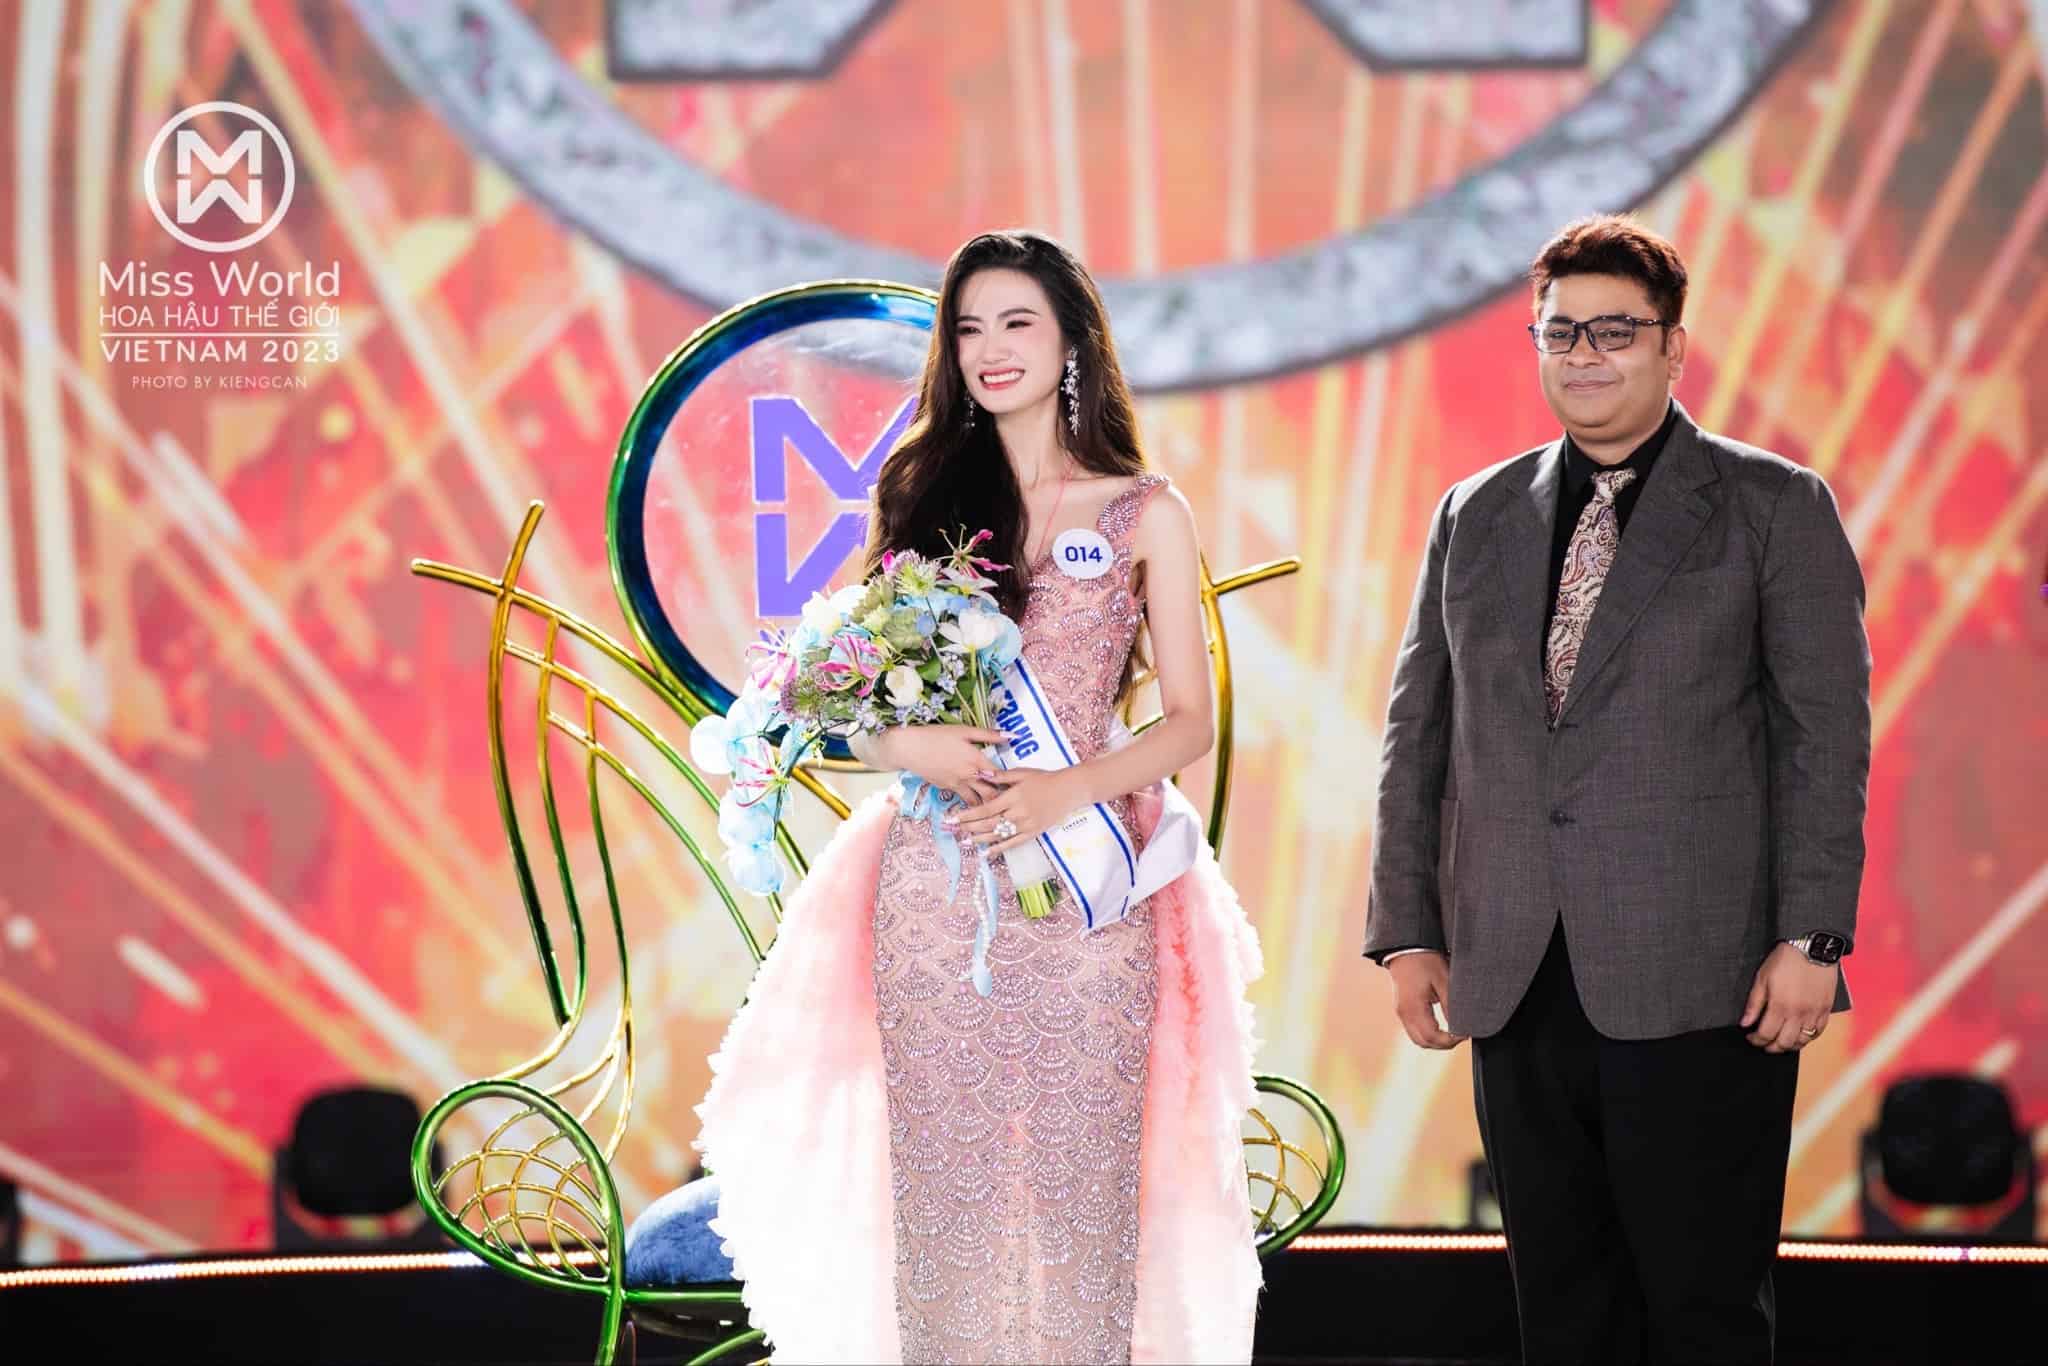 Miss World Vietnam 2023 trở thành đại sứ thương hiệu Tydol Plus